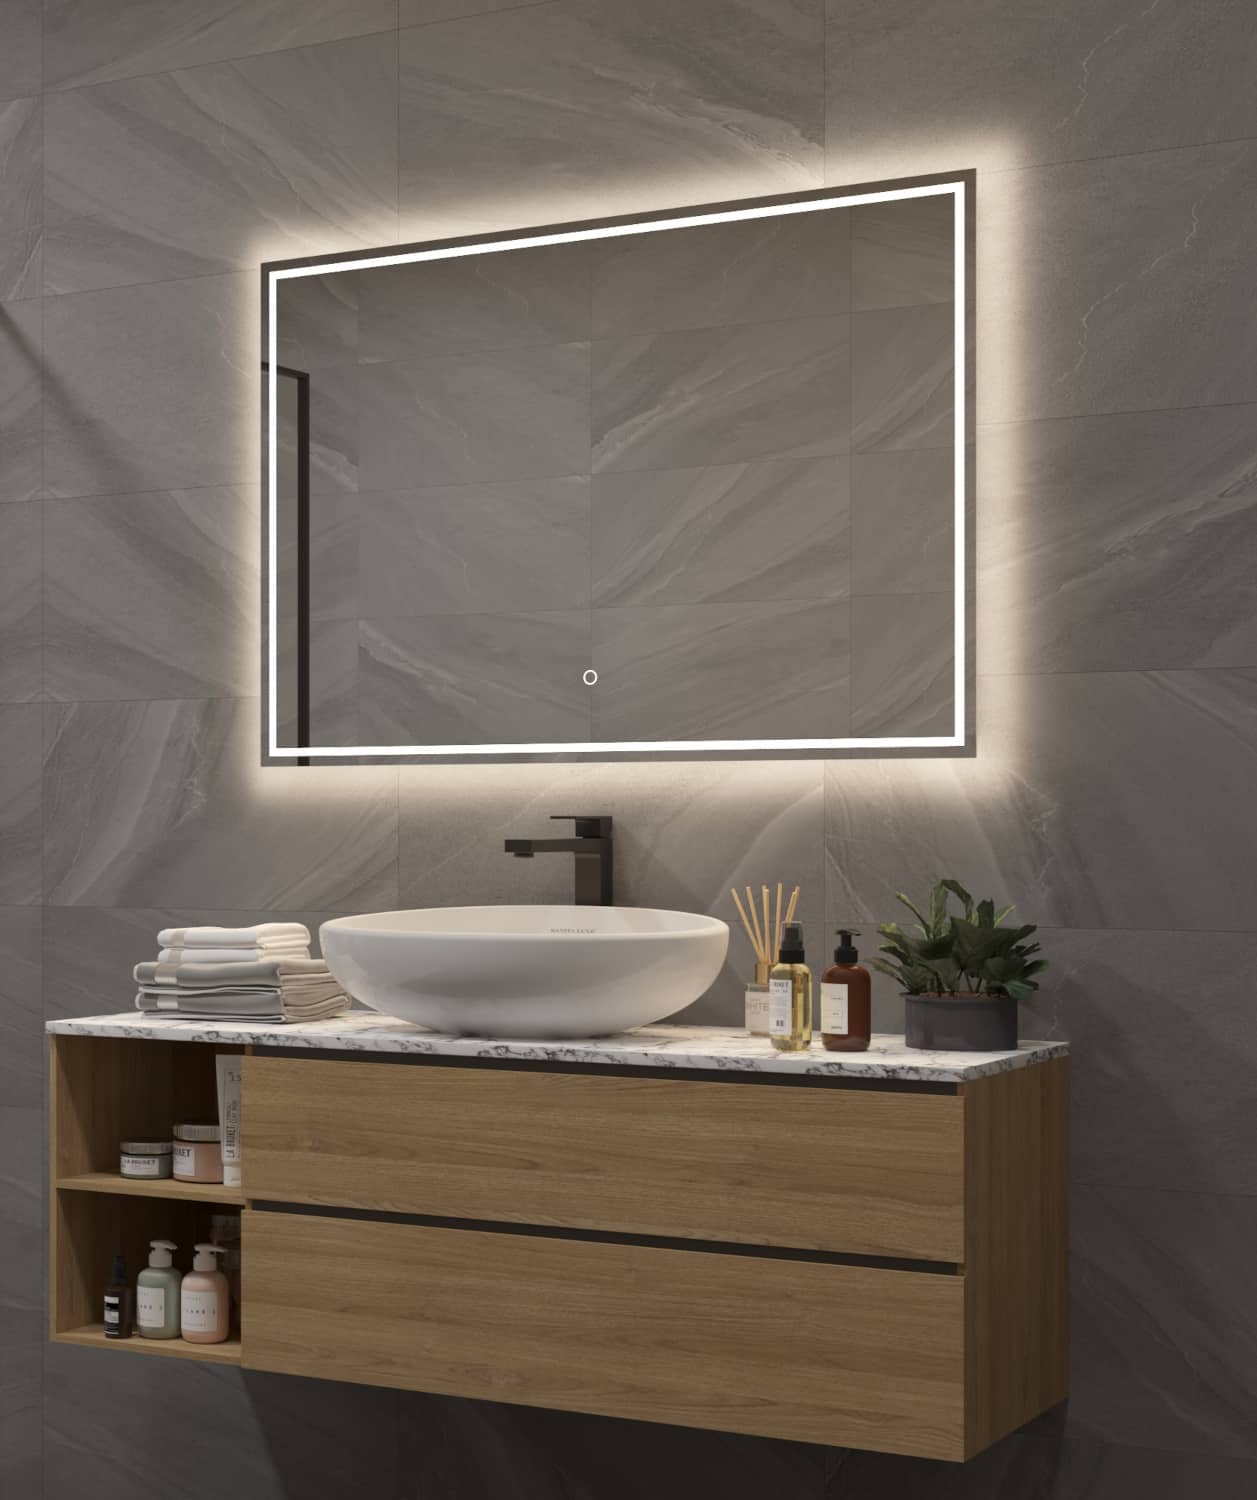 De indirecte verlichting schijnt fraai vanachter de spiegel over de wand en het badkamermeubel, terwijl de directe verlichting het gezicht praktisch verlicht